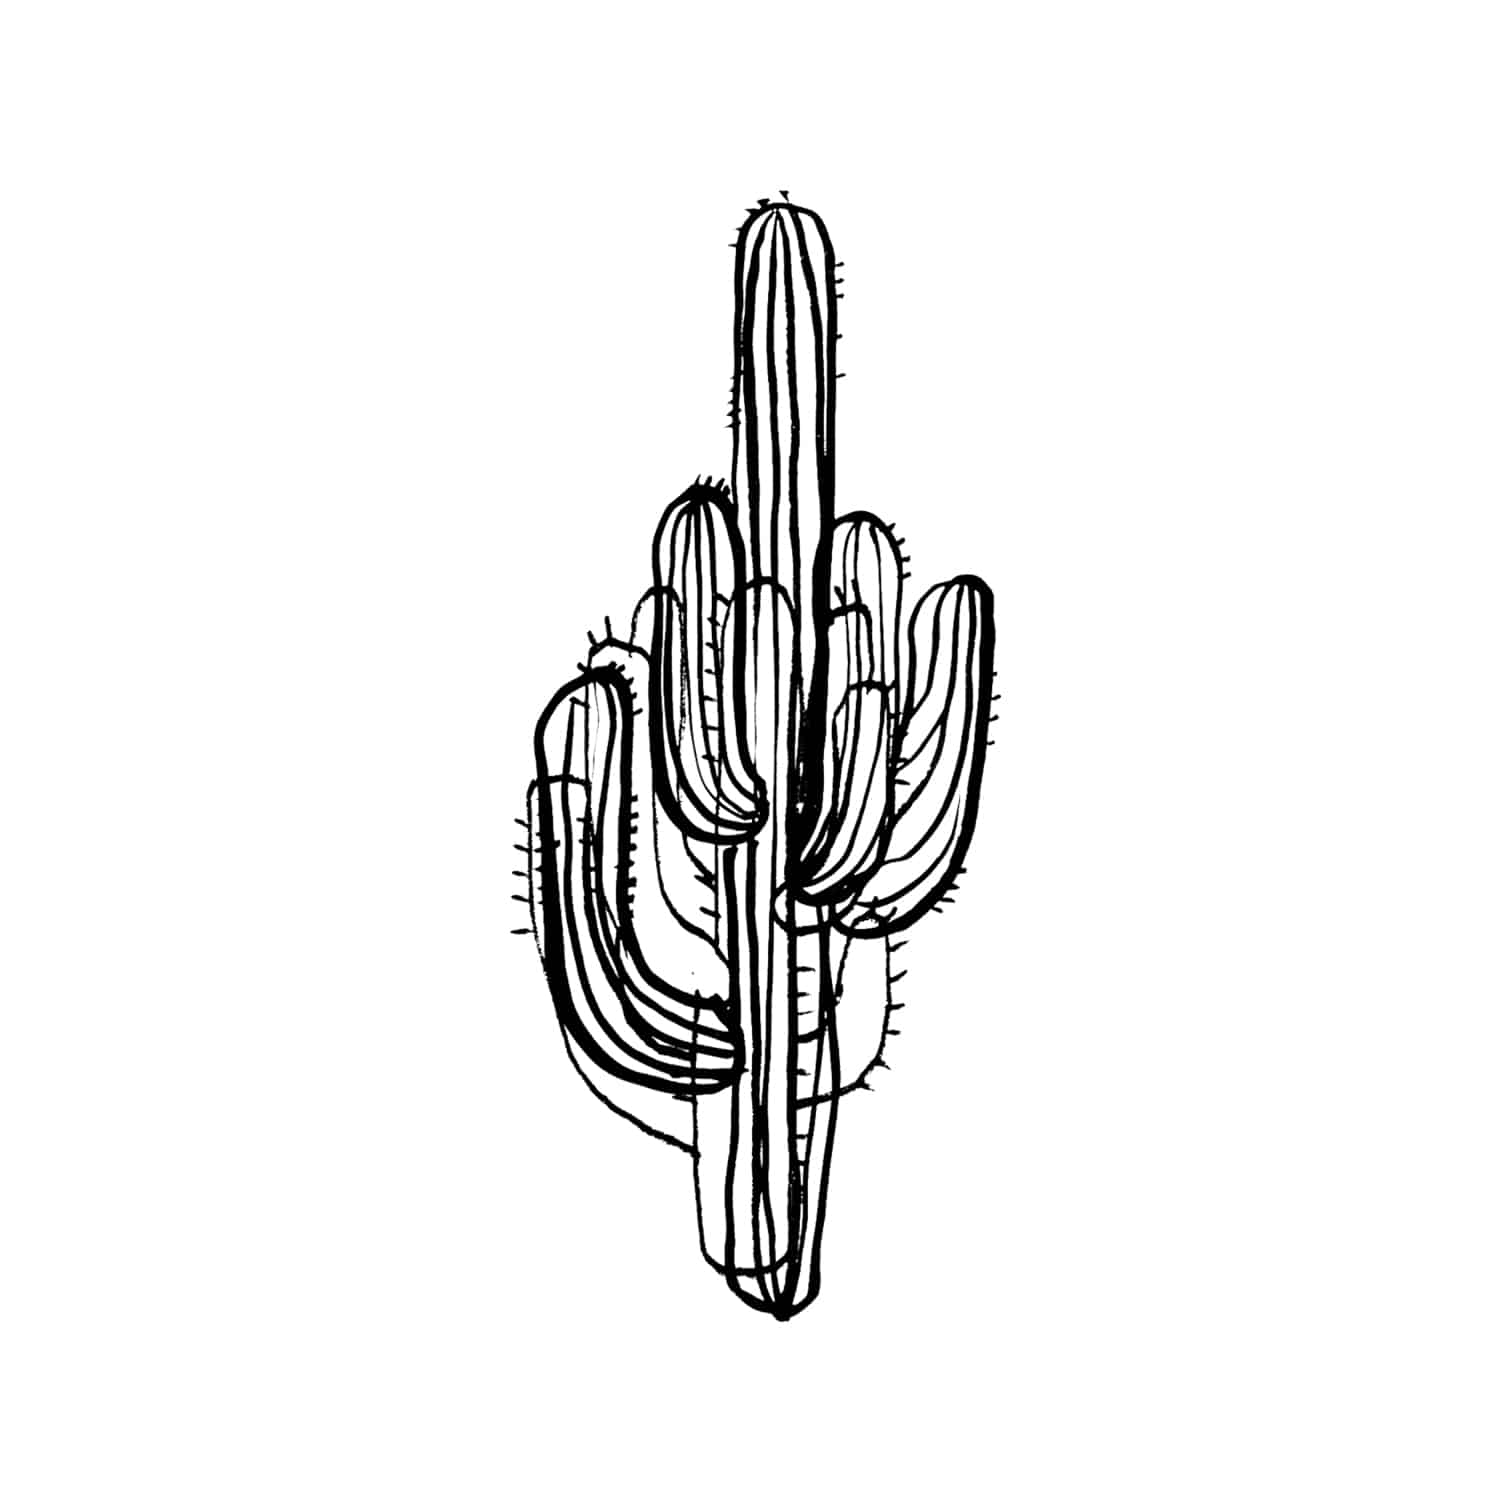 태틀리 Saguaro Cactus 타투스티커 페어 2매